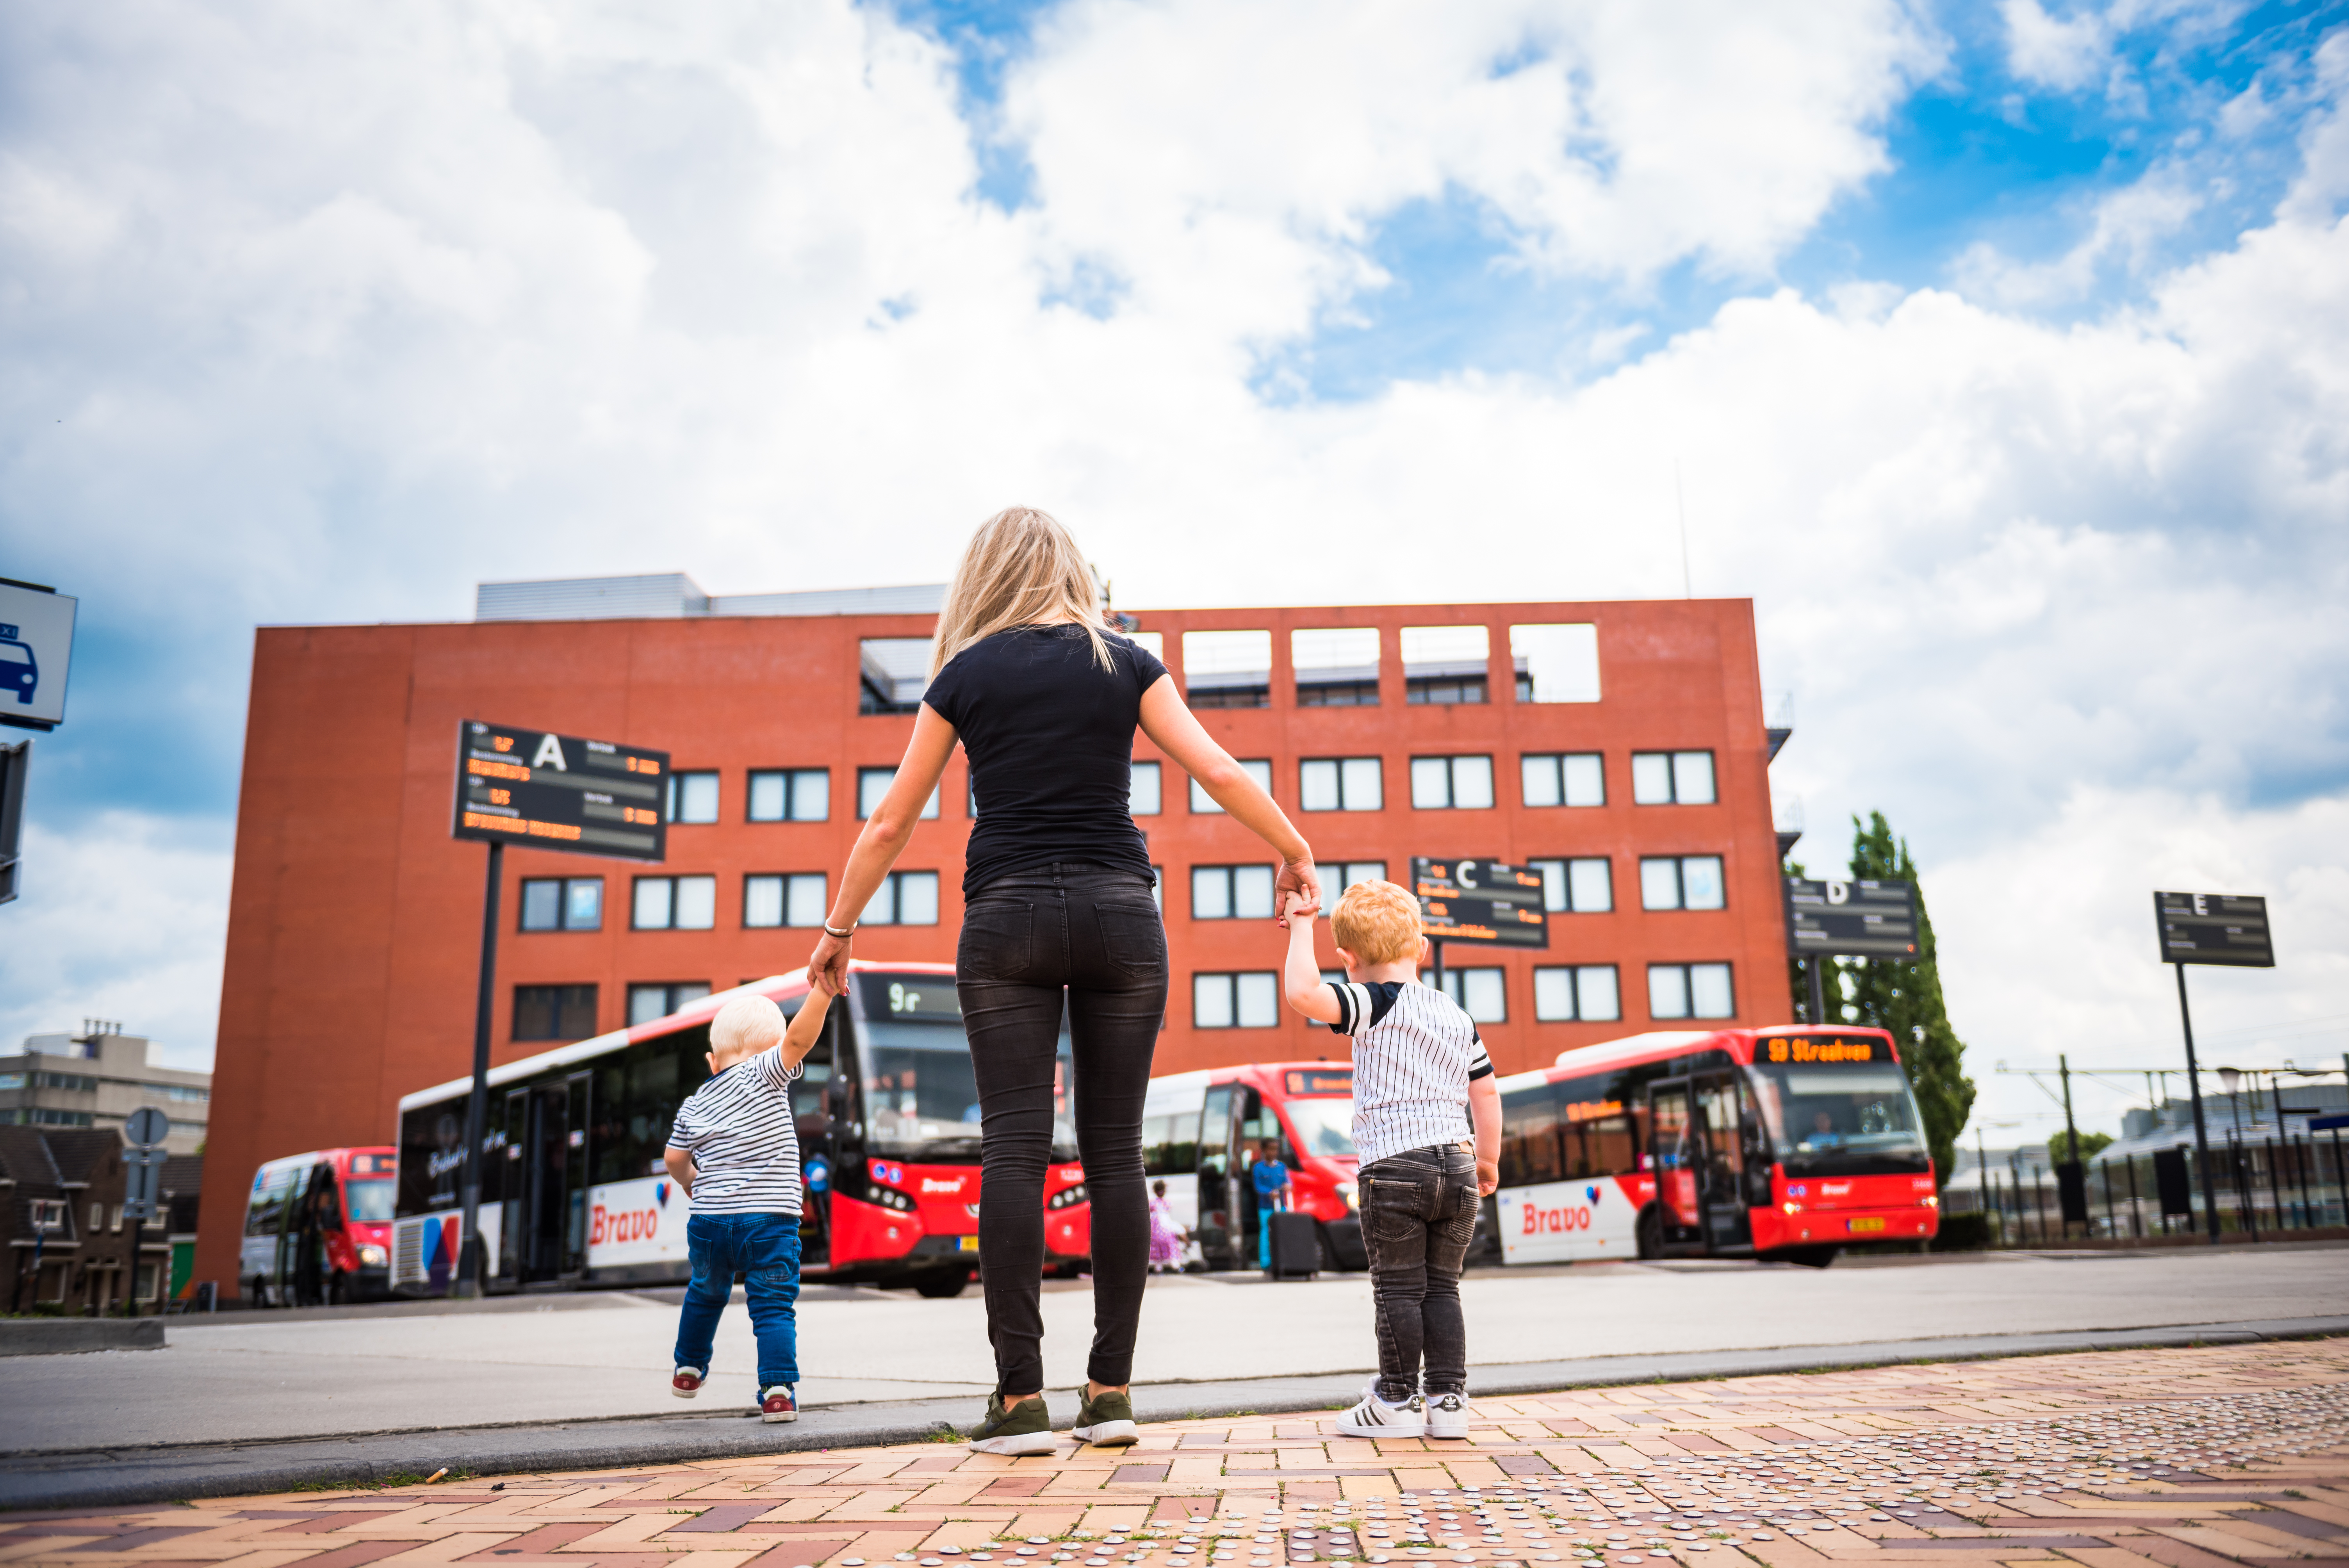 Een jonge vrouw met aan elke hand een klein kindje, vanaf de rug bezien kijk zij uit over een busstation waar rode Arriva-bussen geparkeerd staan.